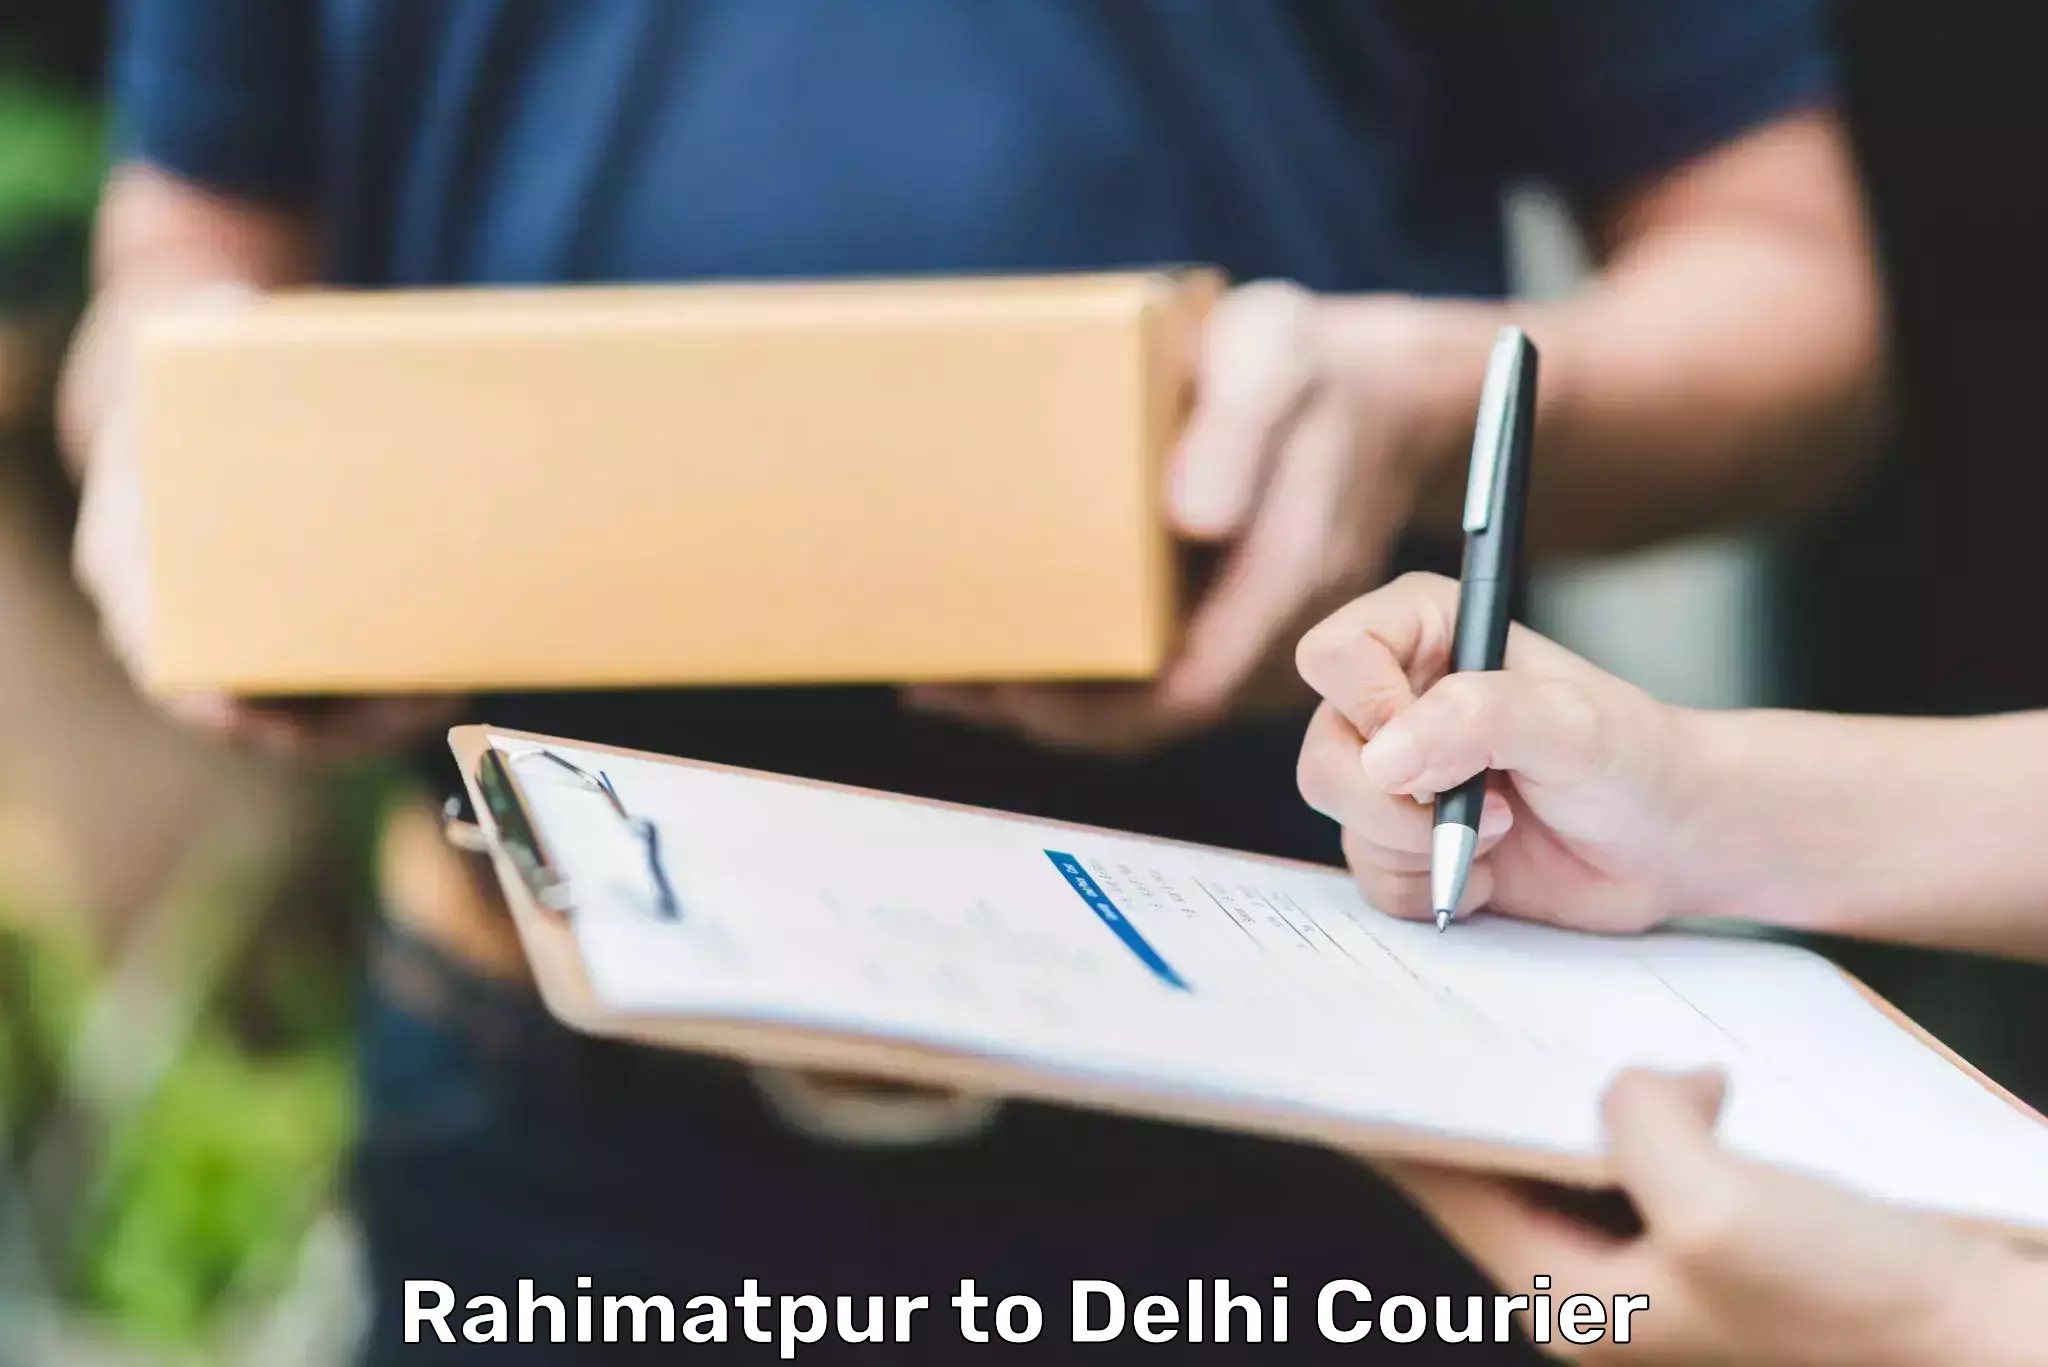 Urgent courier needs Rahimatpur to Ramesh Nagar